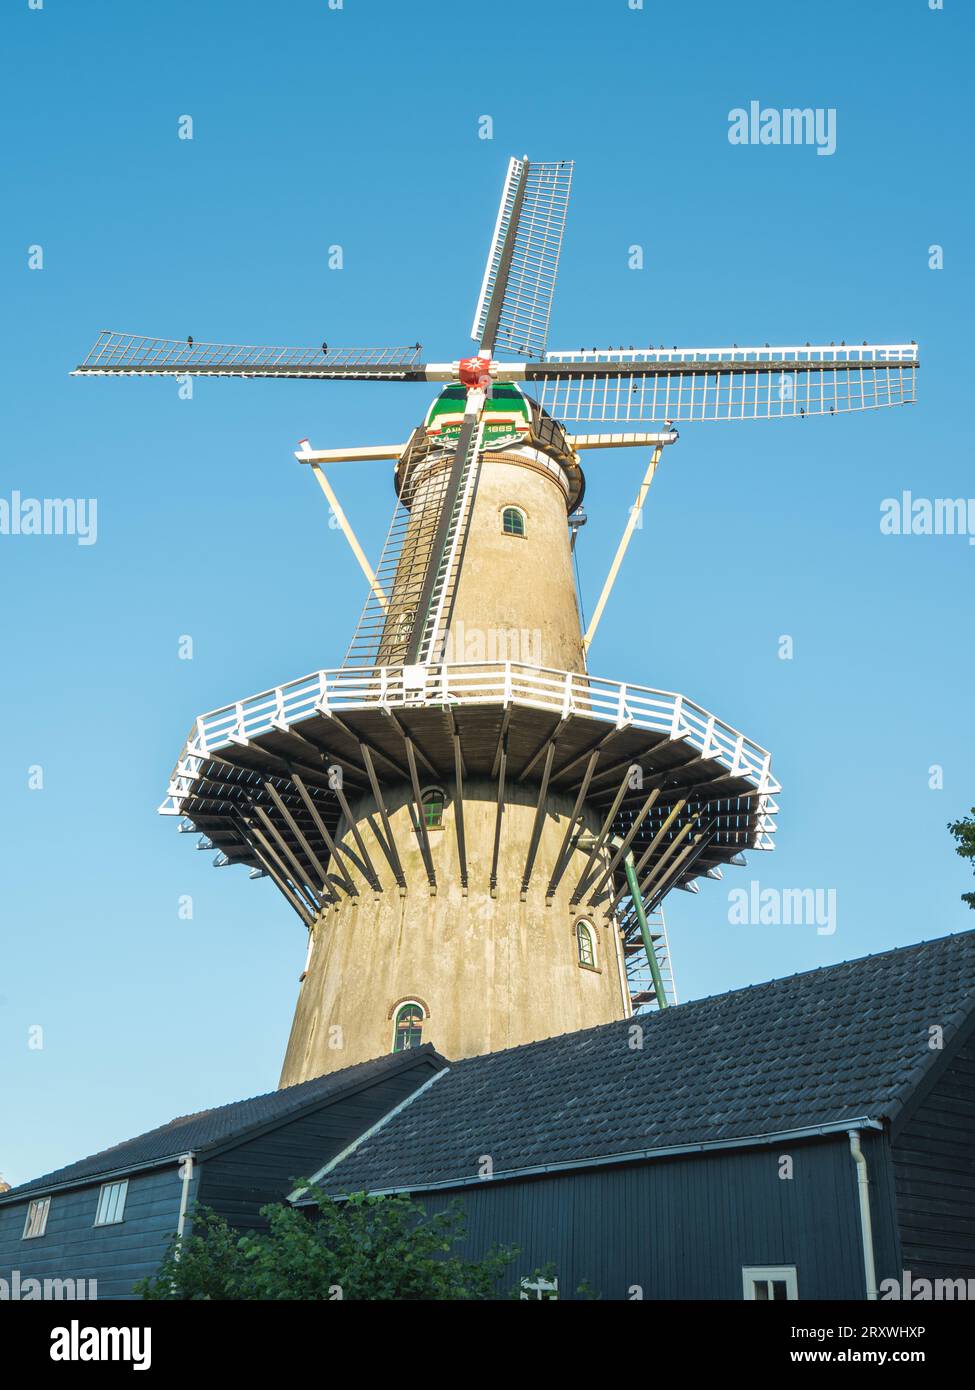 Molen Windlust, le moulin à vent de Wateringen, pays-Bas. Banque D'Images